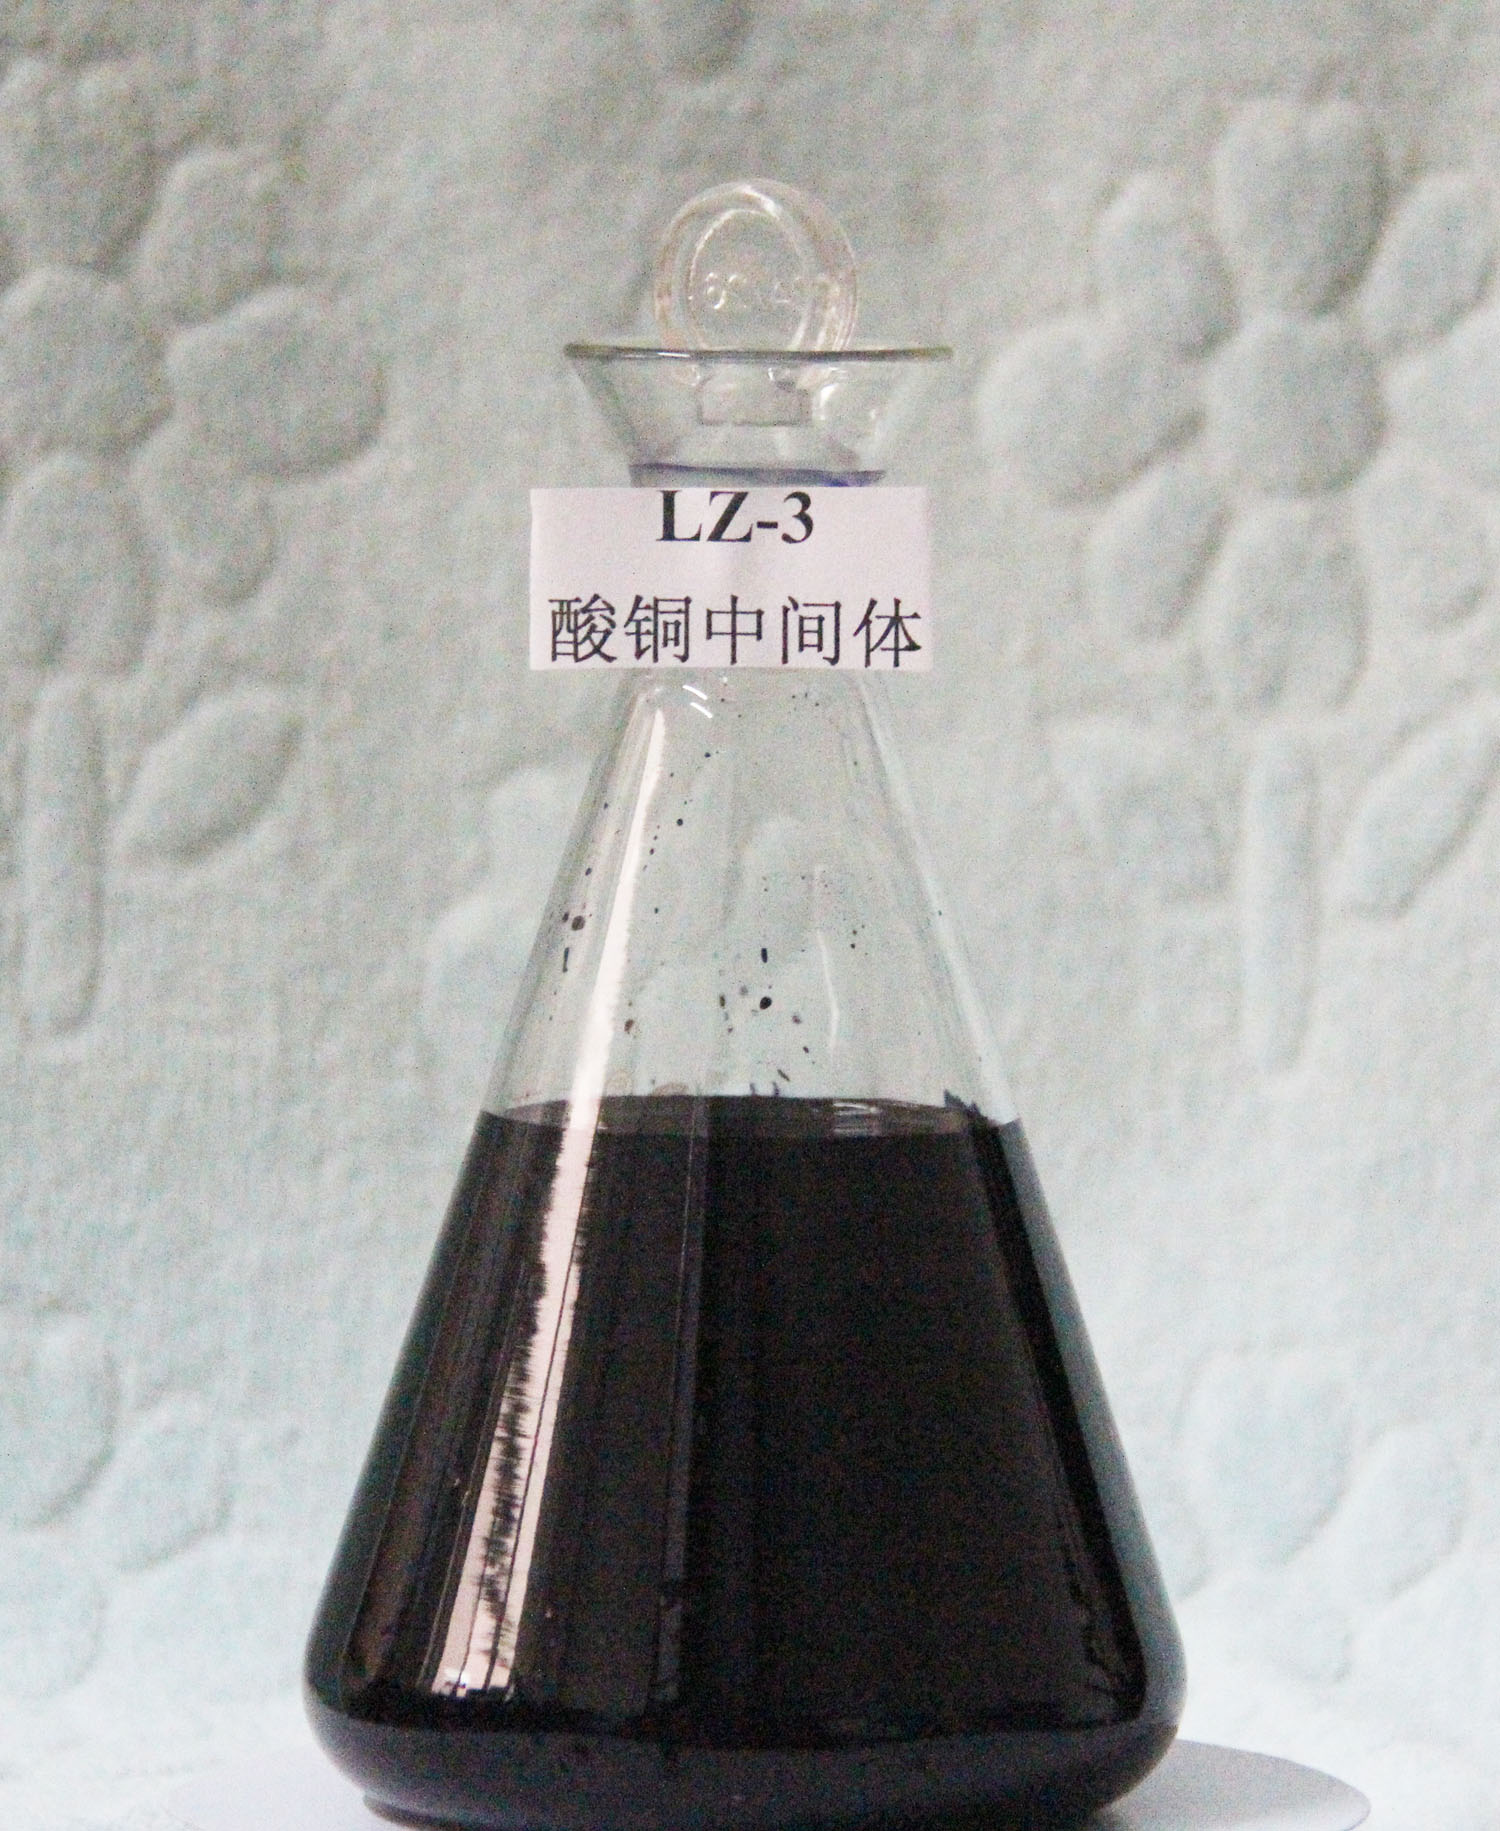 迪美科技专业生产电镀蓝染料LZ-3